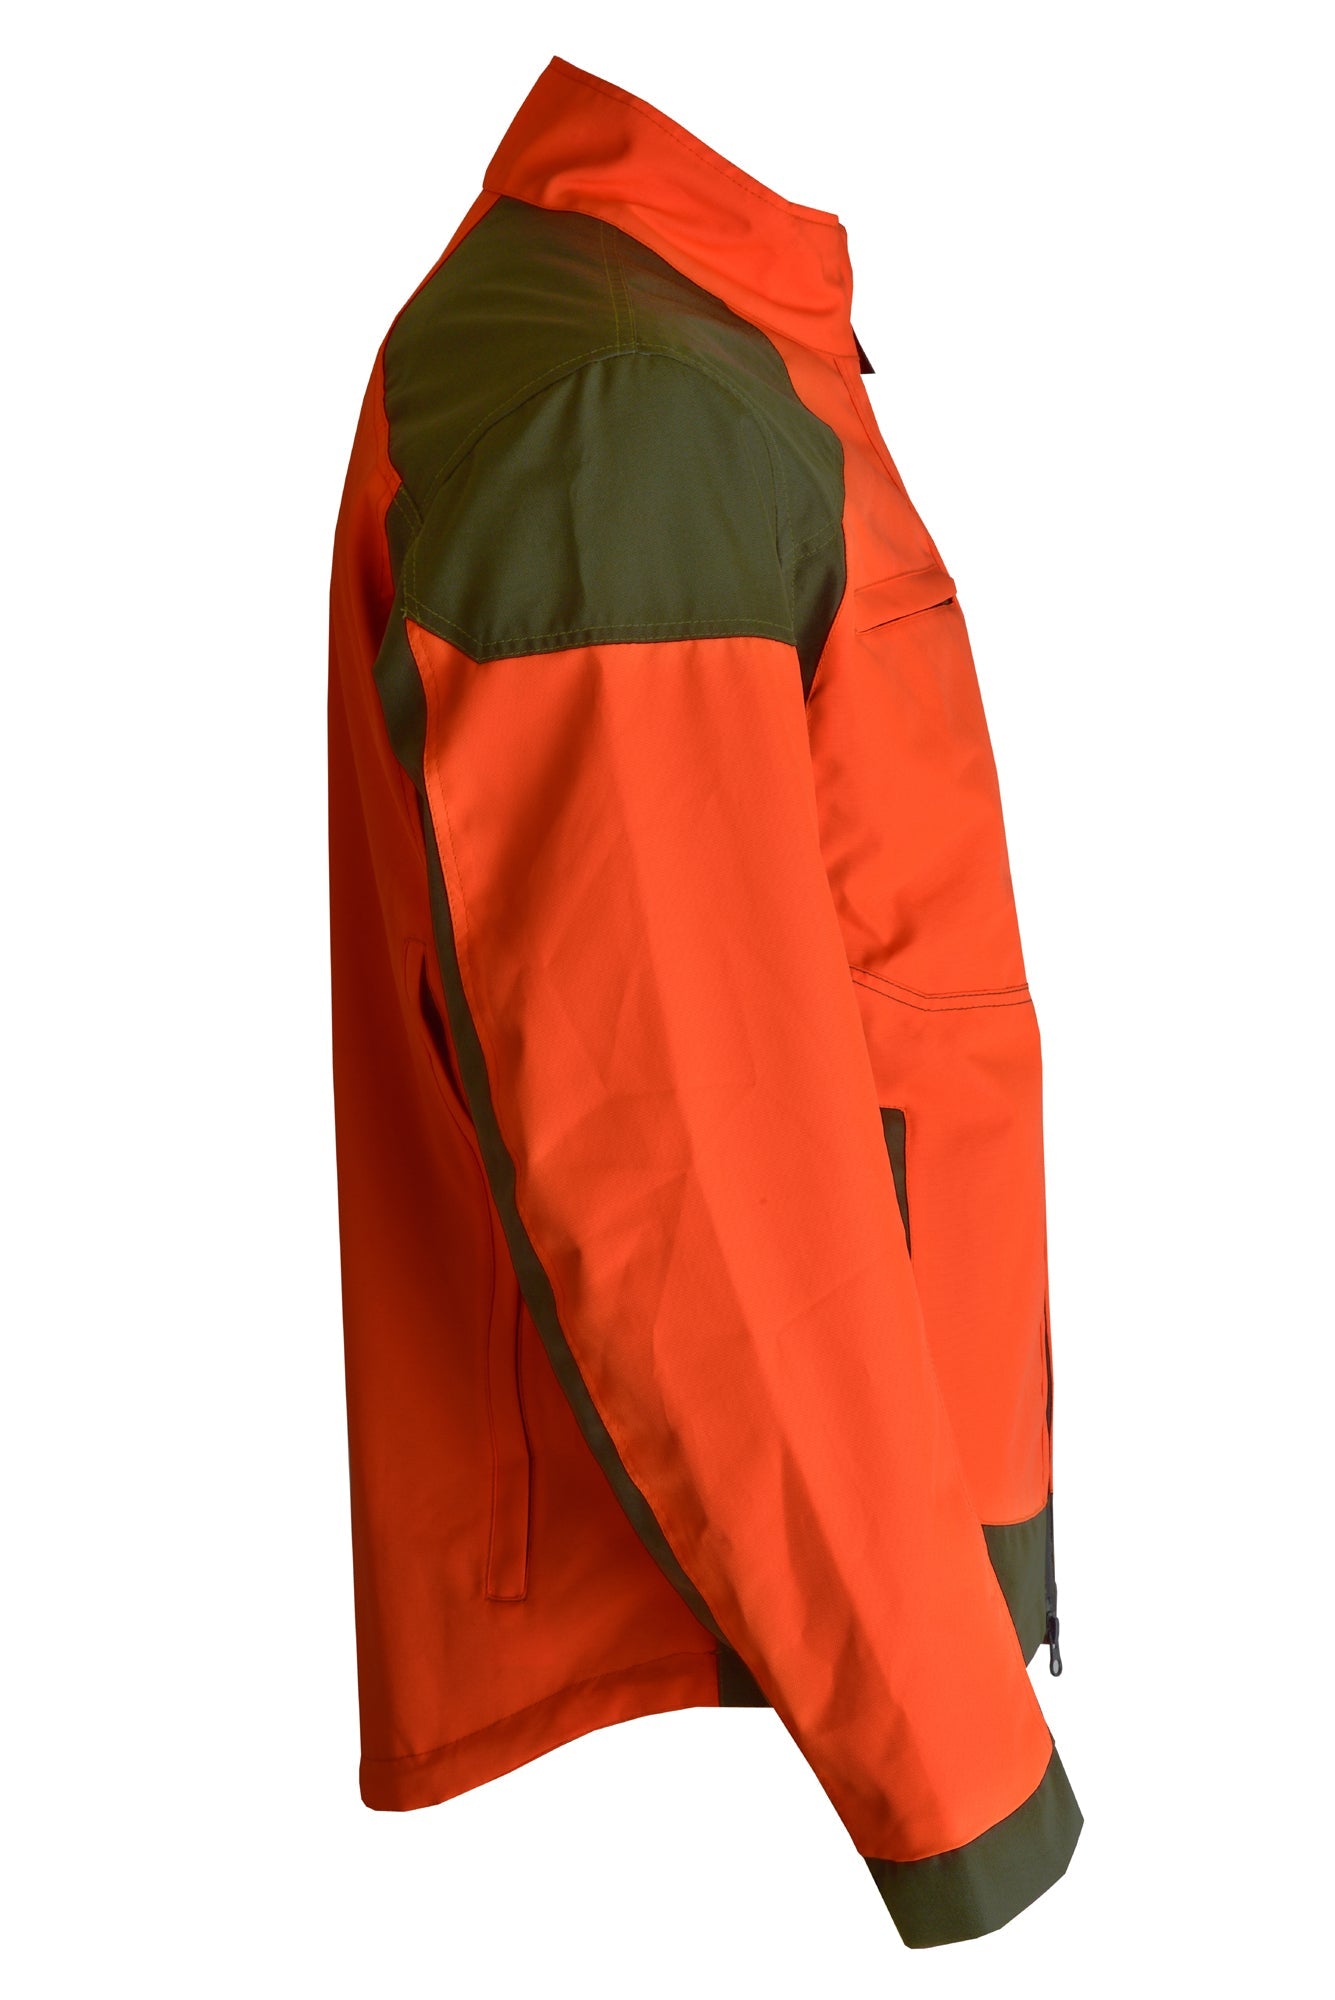 Giacca da caccia KONUSTEX MAXGAME 2.0 impermeabile, interno indossabile singolarmente #365 - OnTheRoad.shop - KONUSTEX